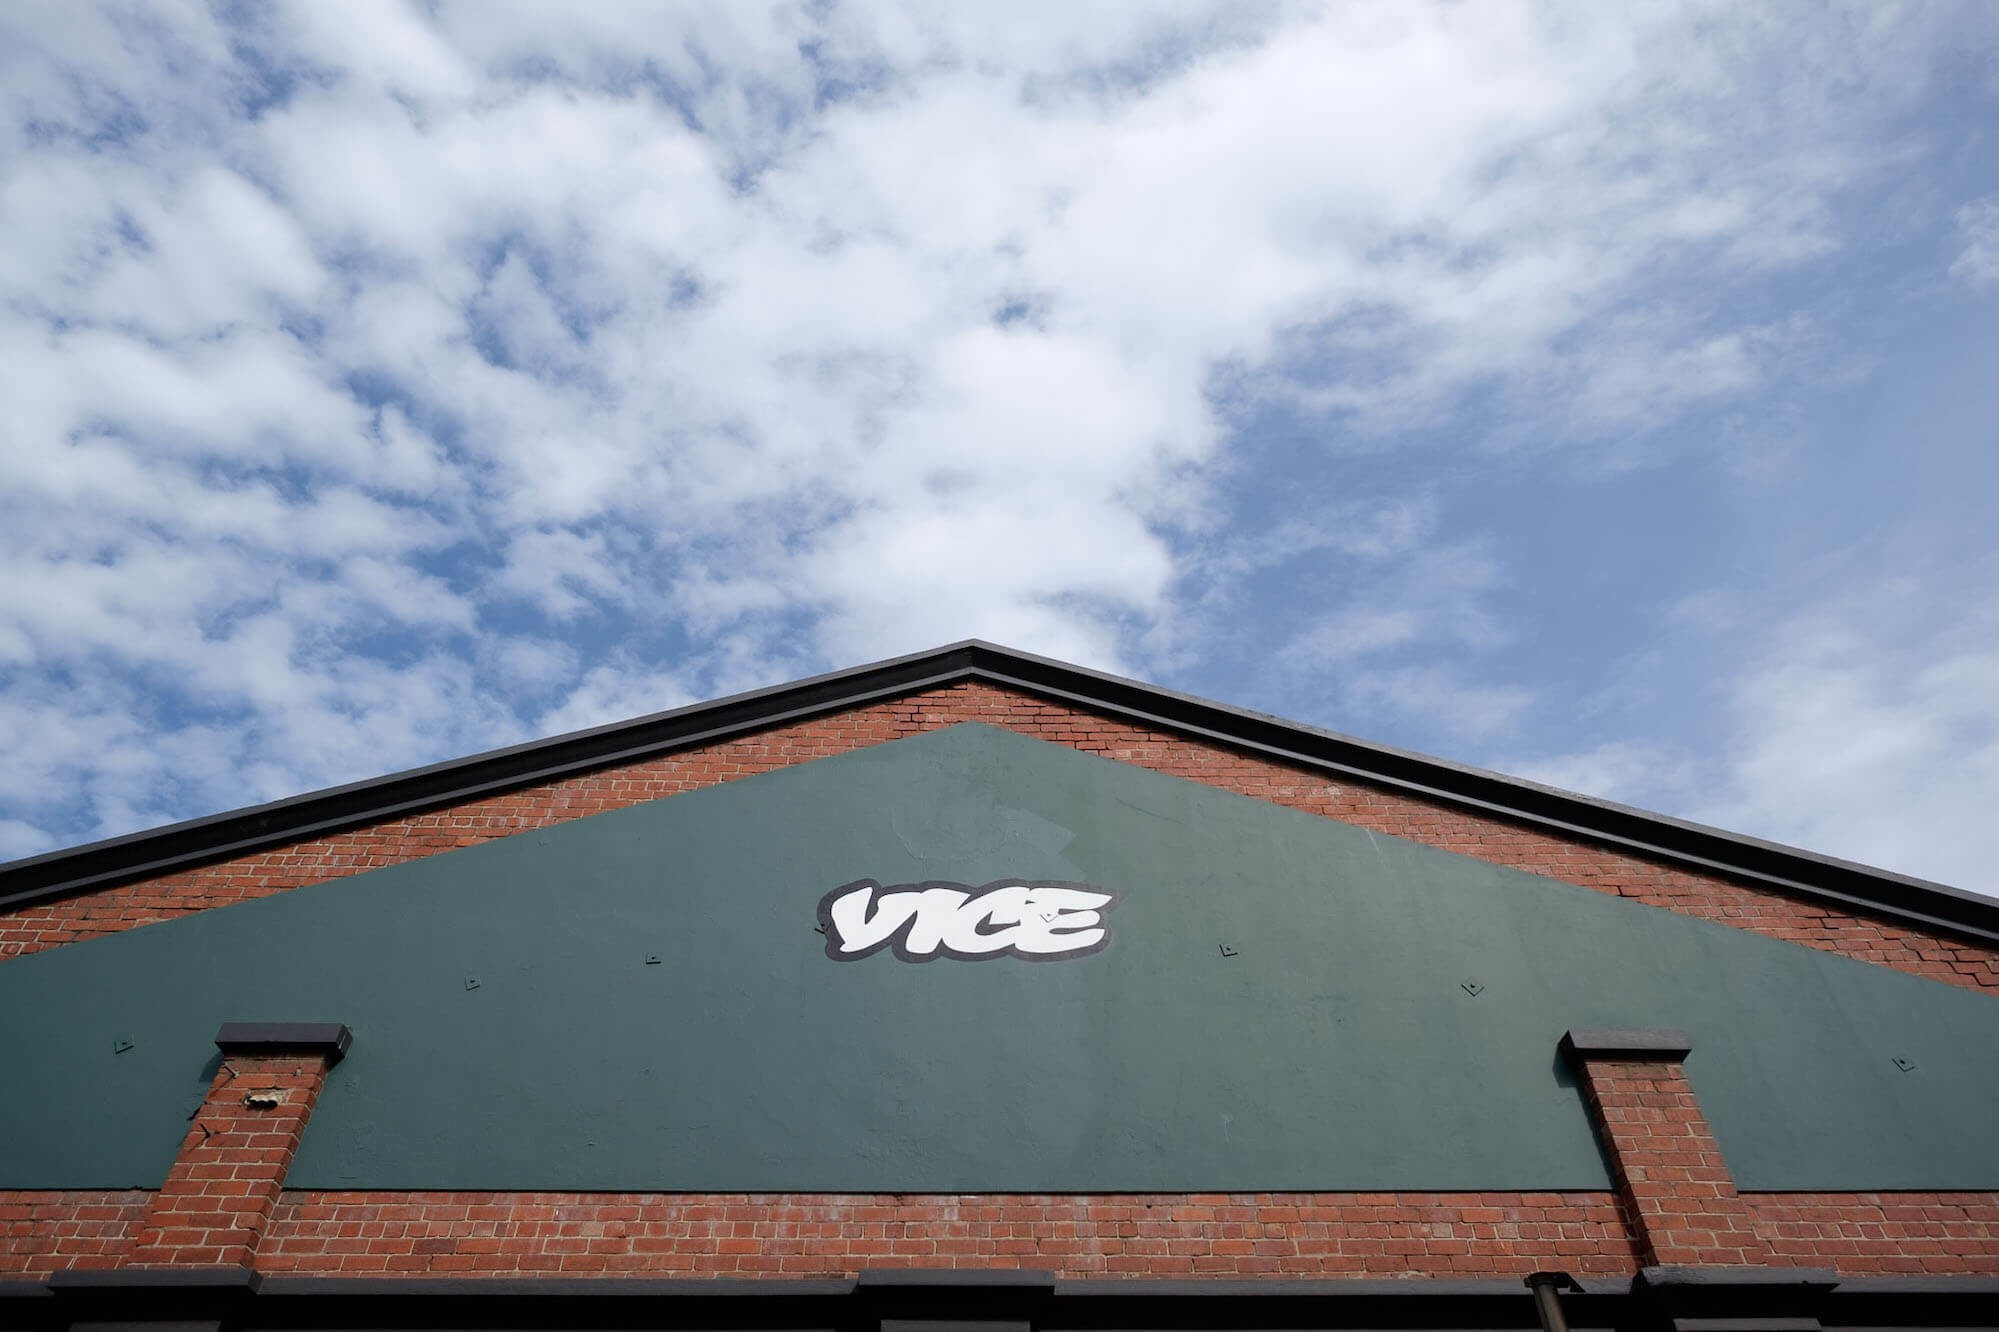 Grupo Vice anuncia centenas de demissões e deve fechar site de notícias